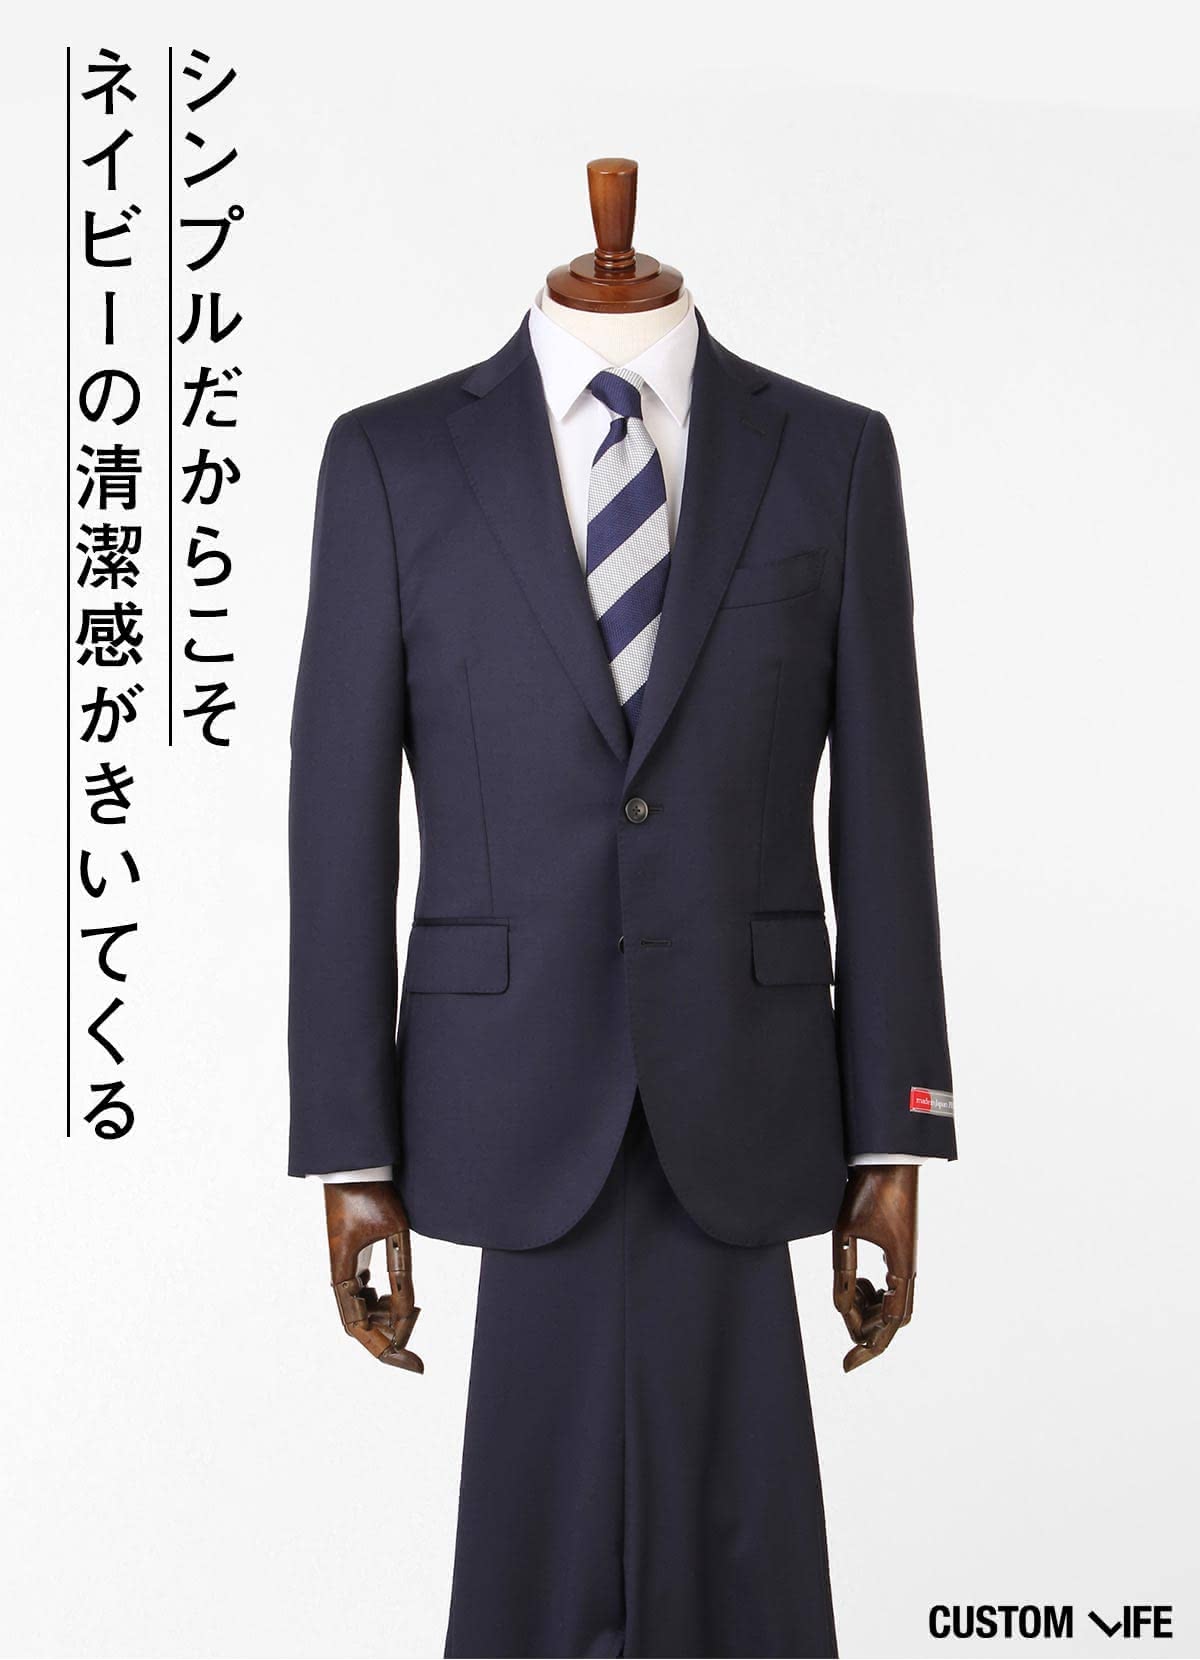 スーツの着こなしはかっこよく コーデからおすすめブランドを徹底解説 Customlife カスタムライフ